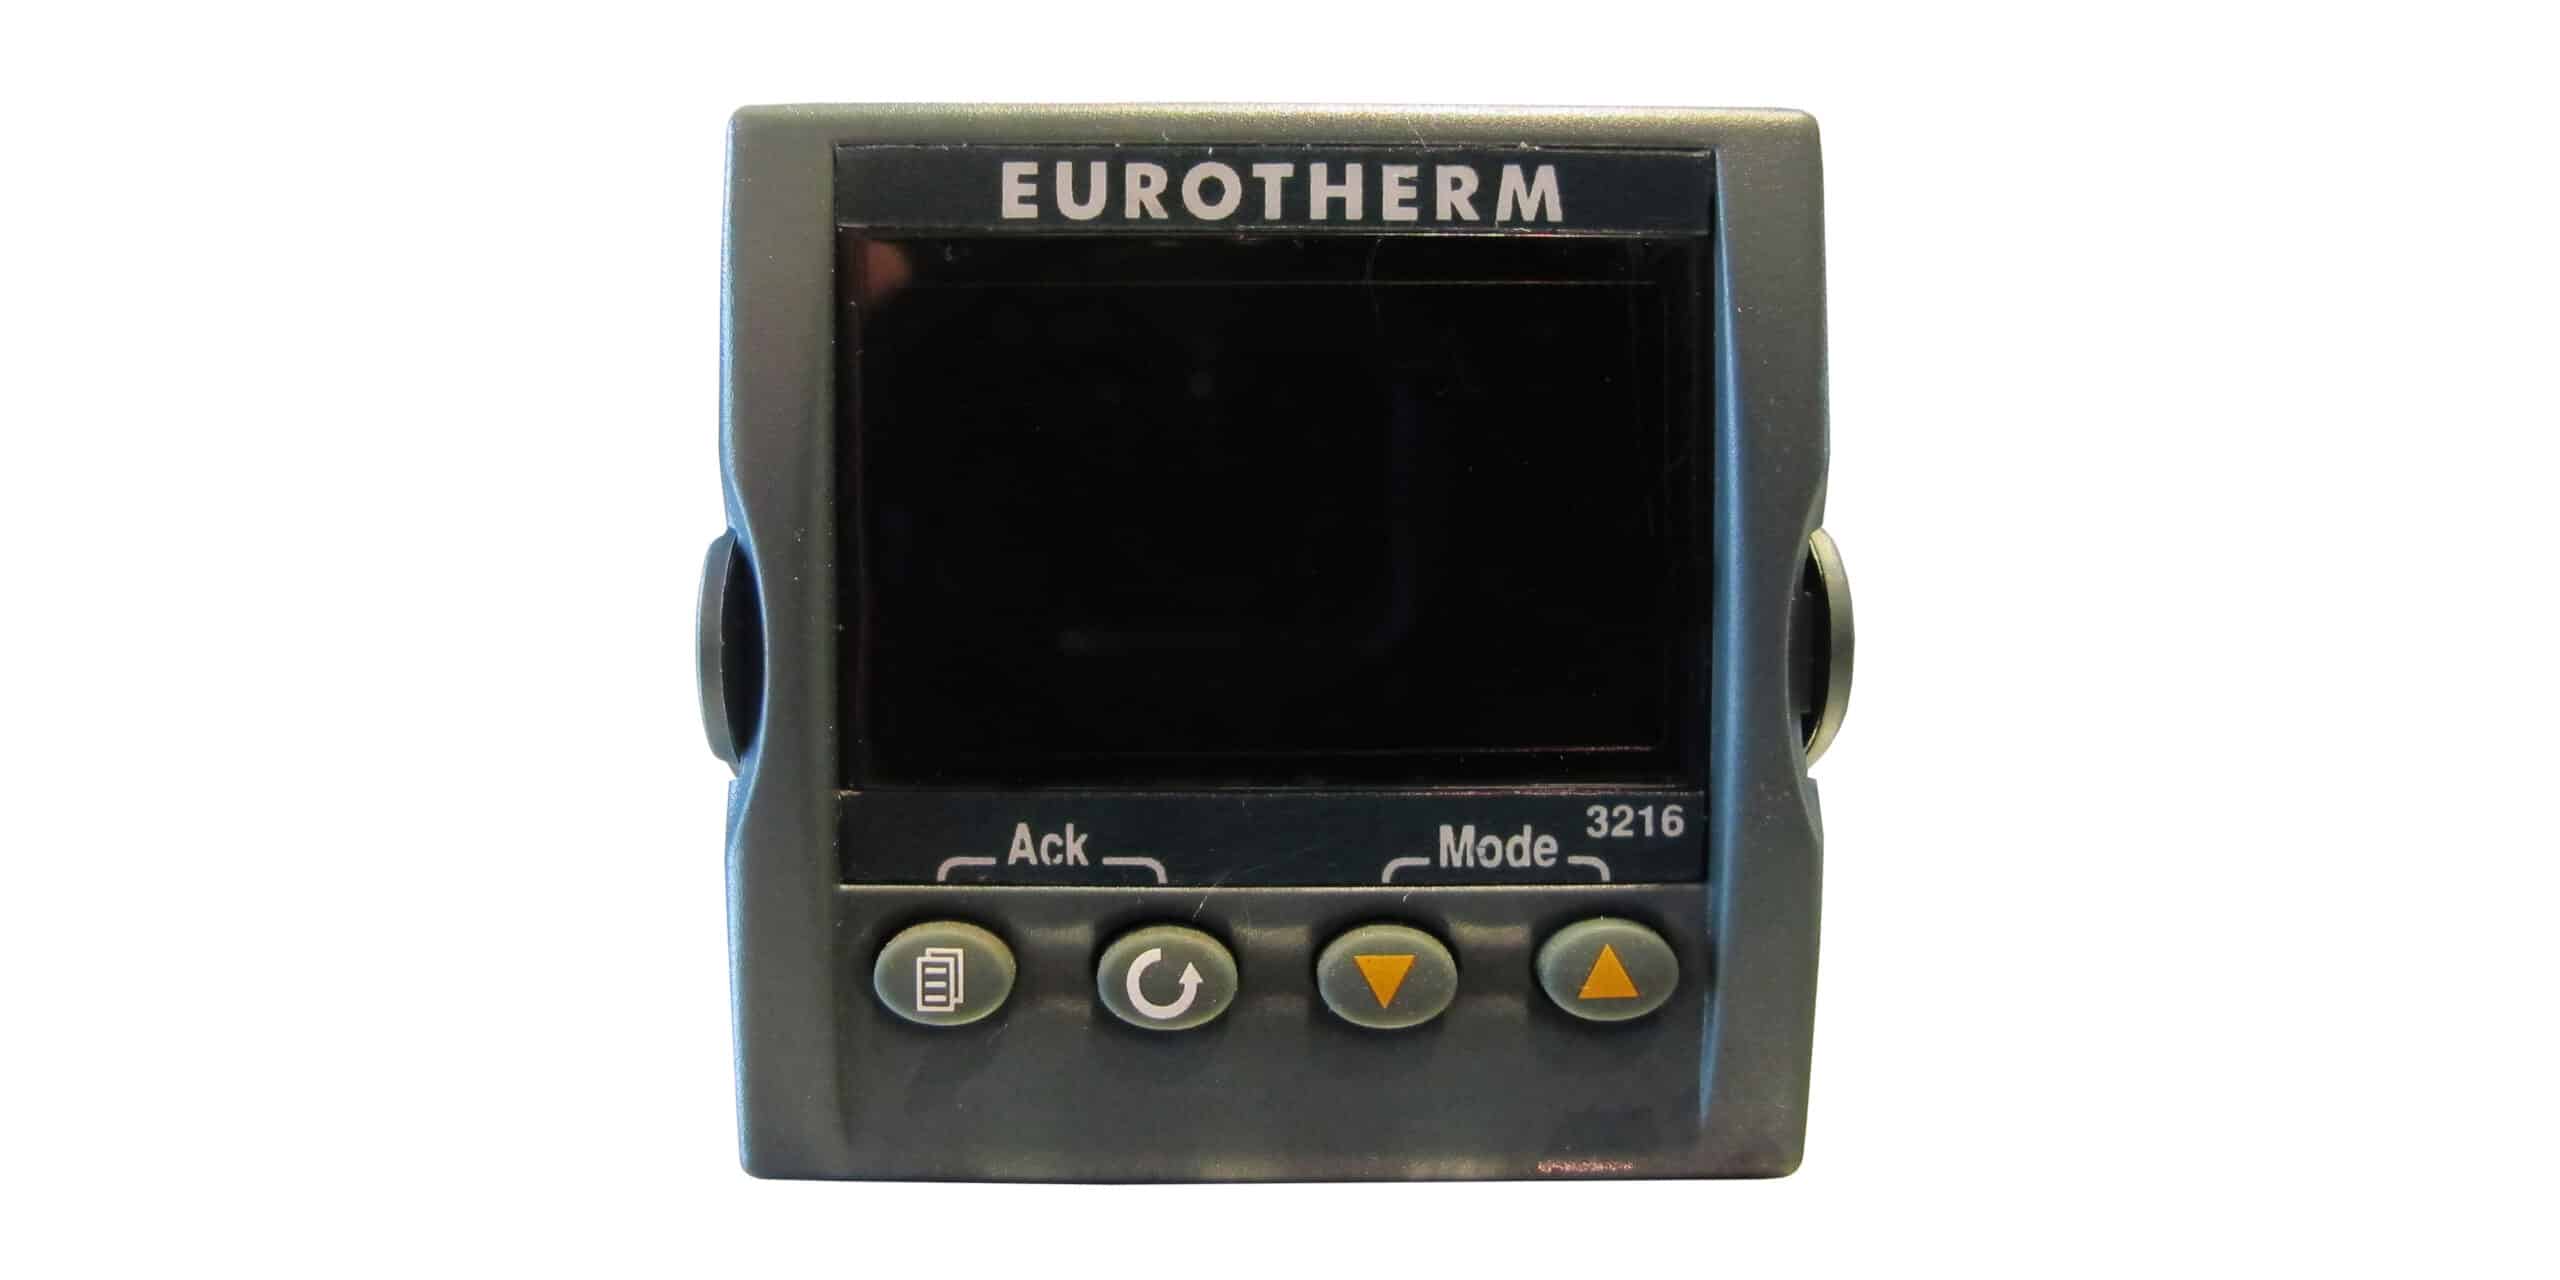 SBS Eurotherm temperature controller